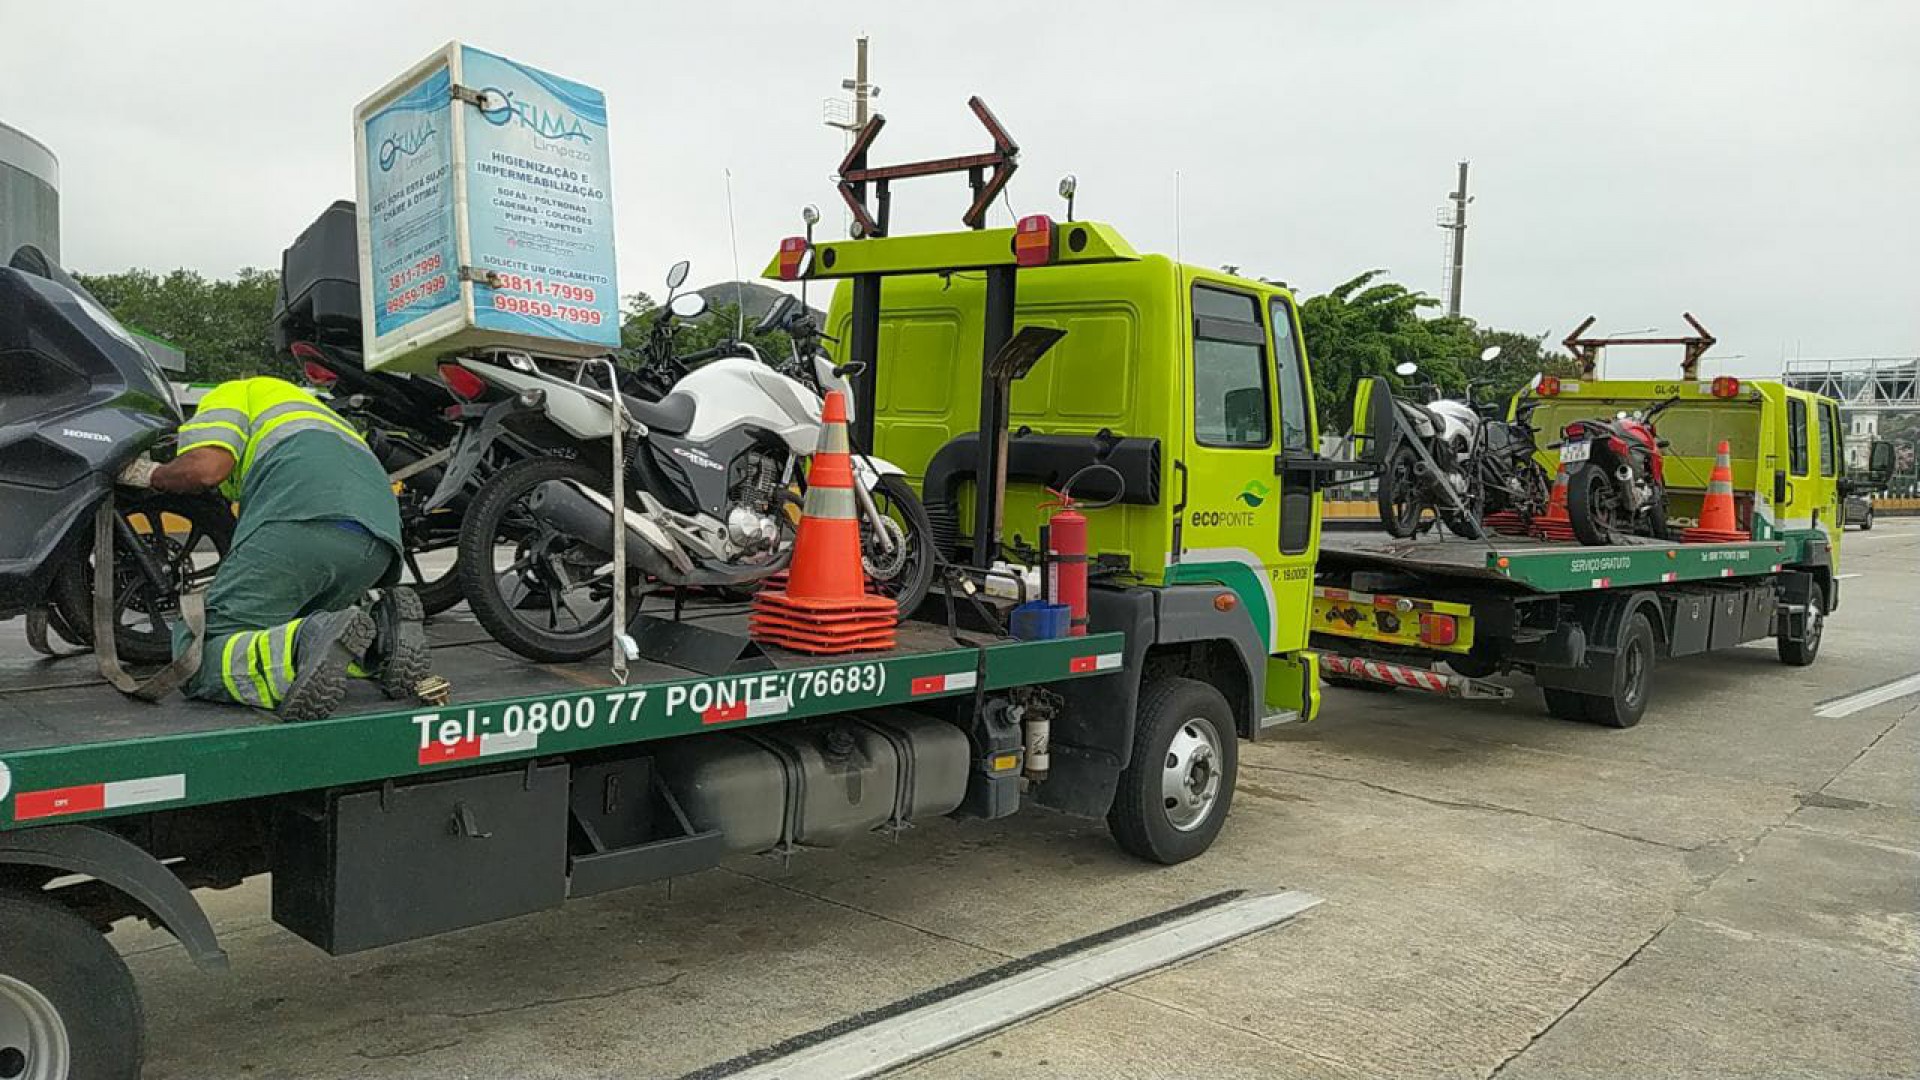 Polícia Rodoviária faz fiscalização e apreende mais de 10 motos na Ponte Rio-Niterói - Divulgação / Polícia Rodoviária Federal